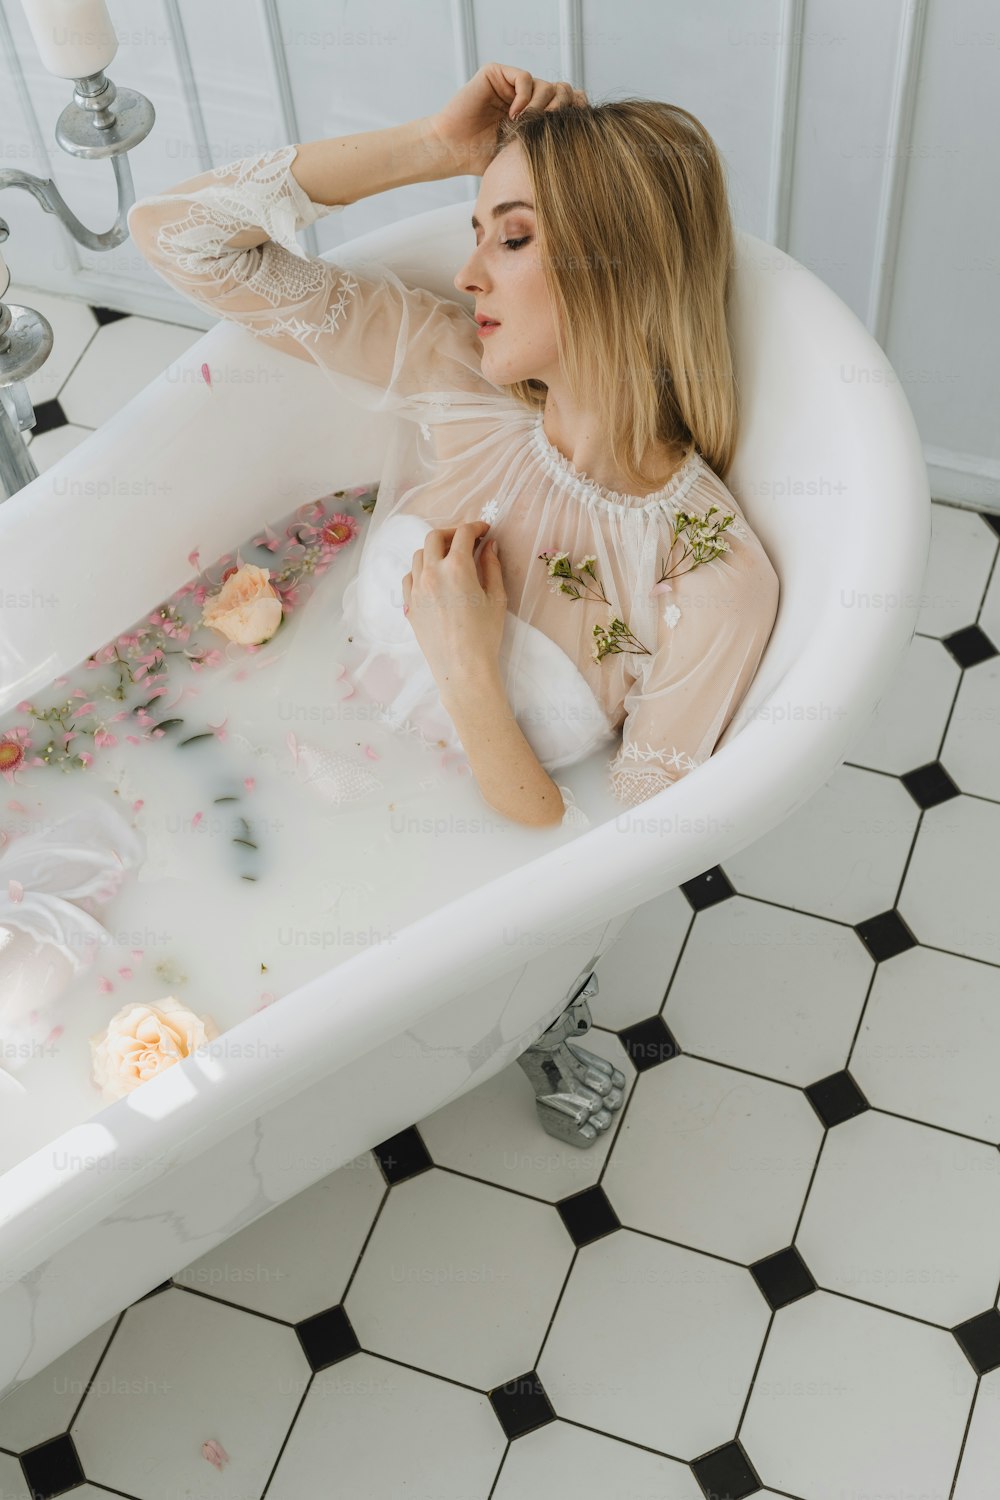 Une femme assise dans une baignoire avec des fleurs partout